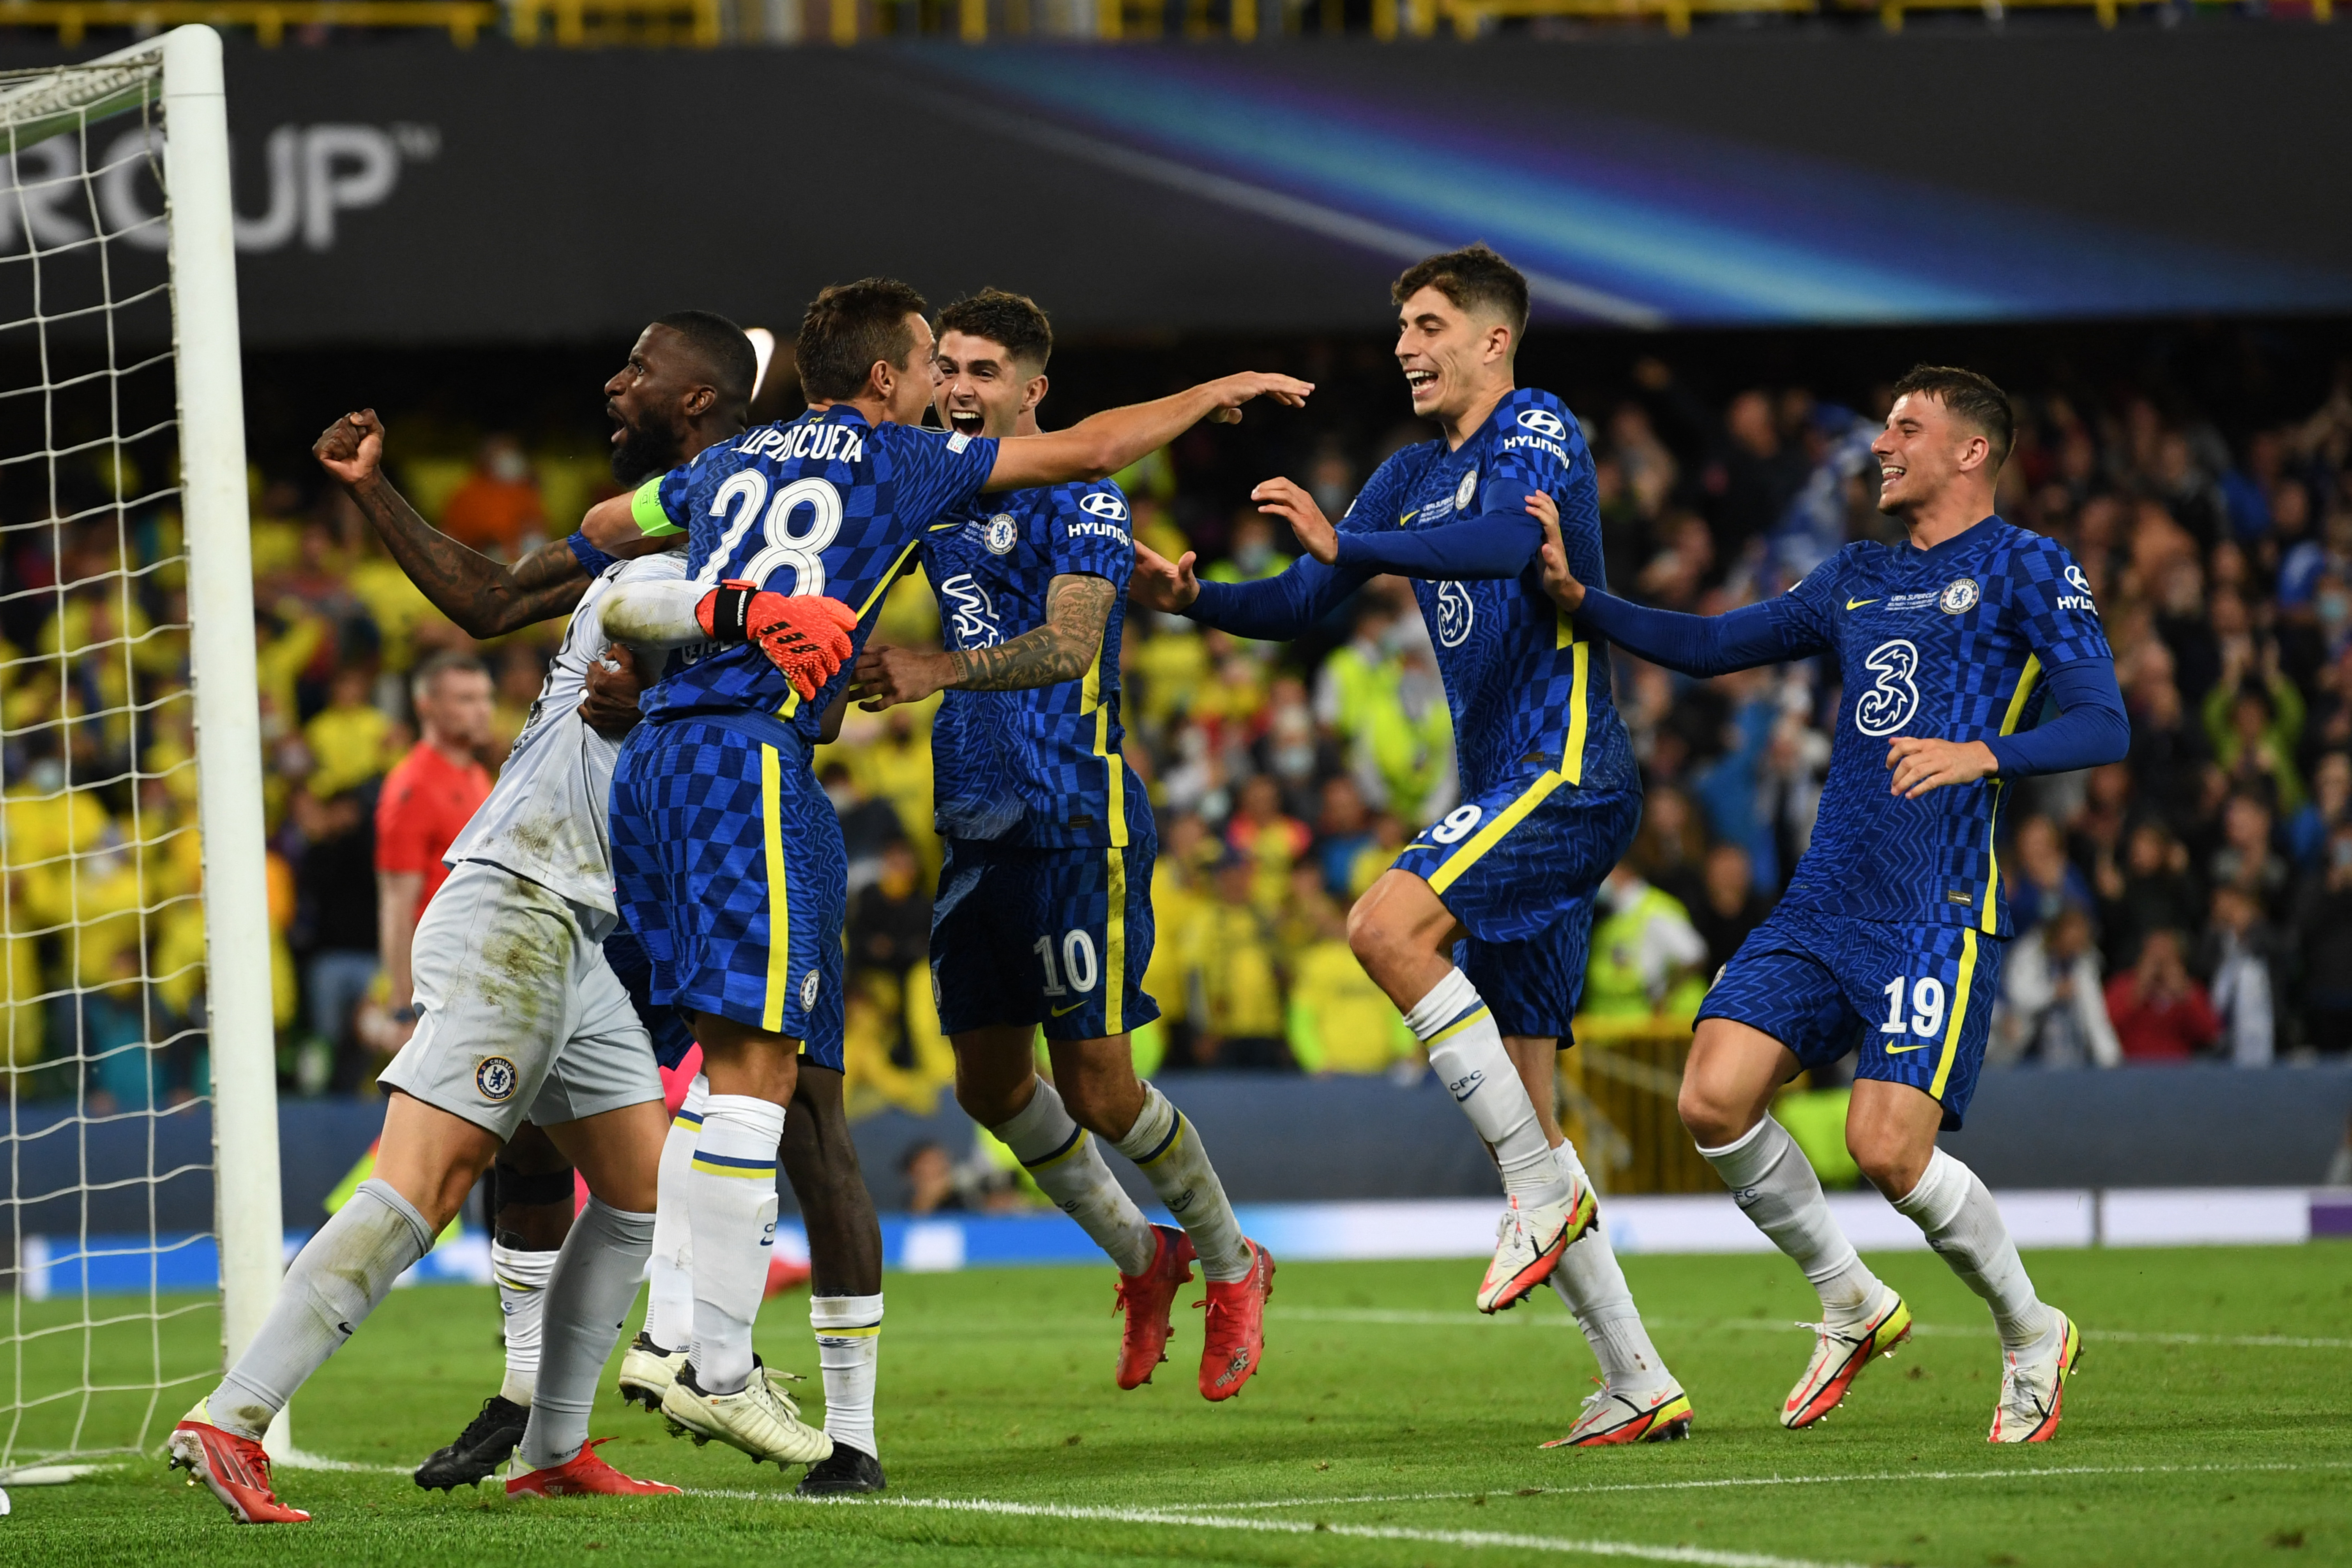 Los jugadores del Chelsea celebran la victoria ante el Villarreal que les dio su segunda Supercopa de Europa. El juego lo disputaron en el Windsor Park en Belfast. Foto Prensa Libre: AFP.